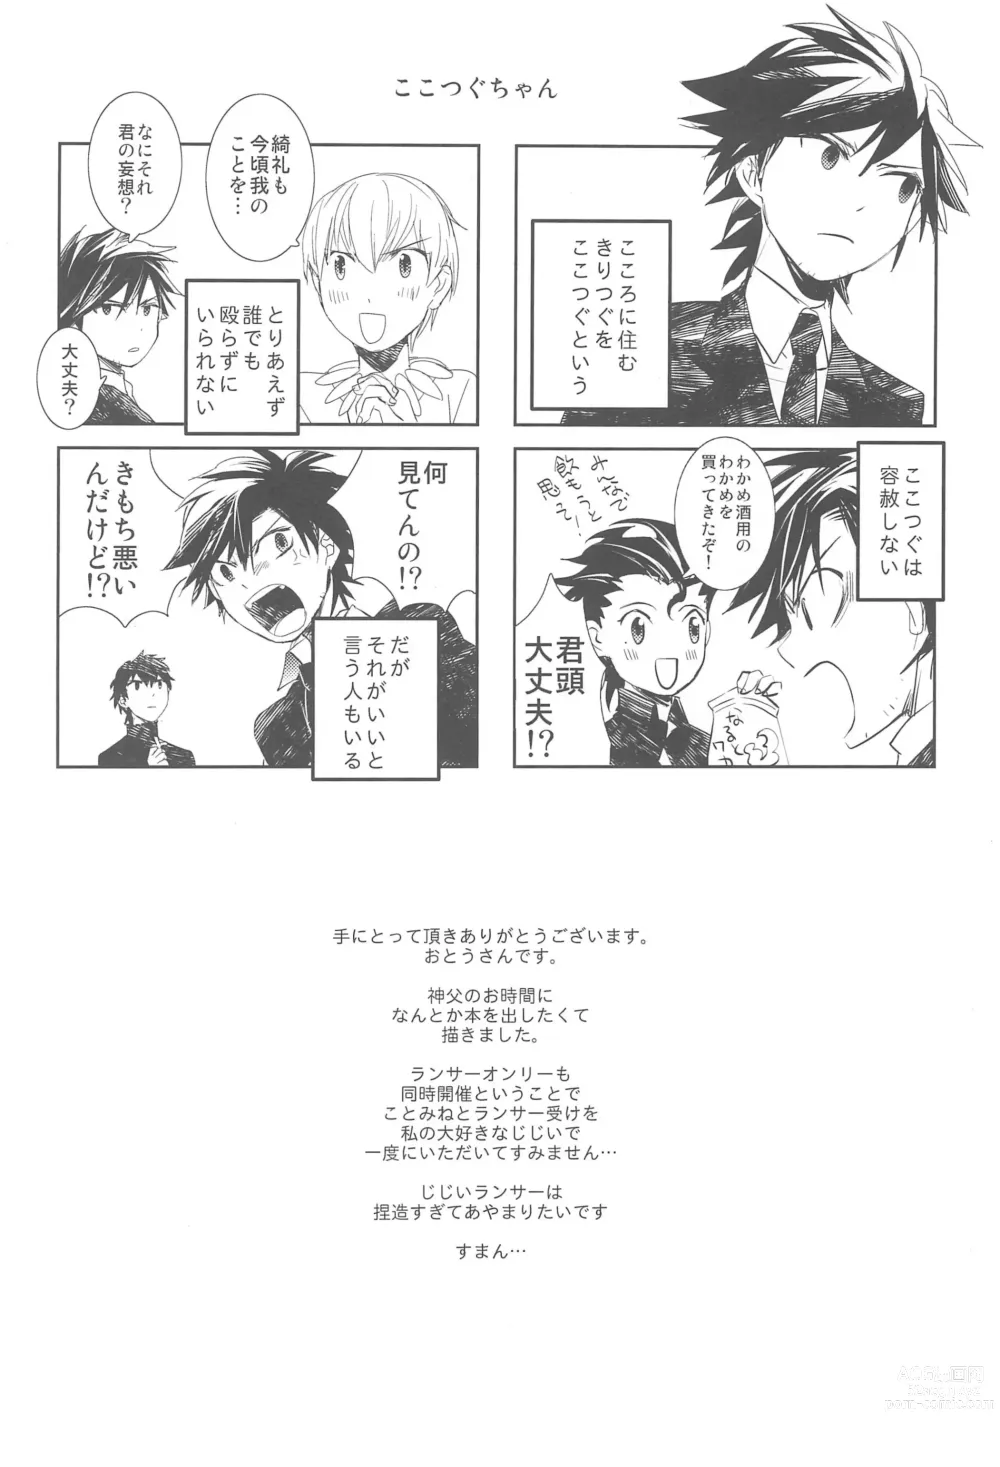 Page 6 of doujinshi Omise no Neko 3.5